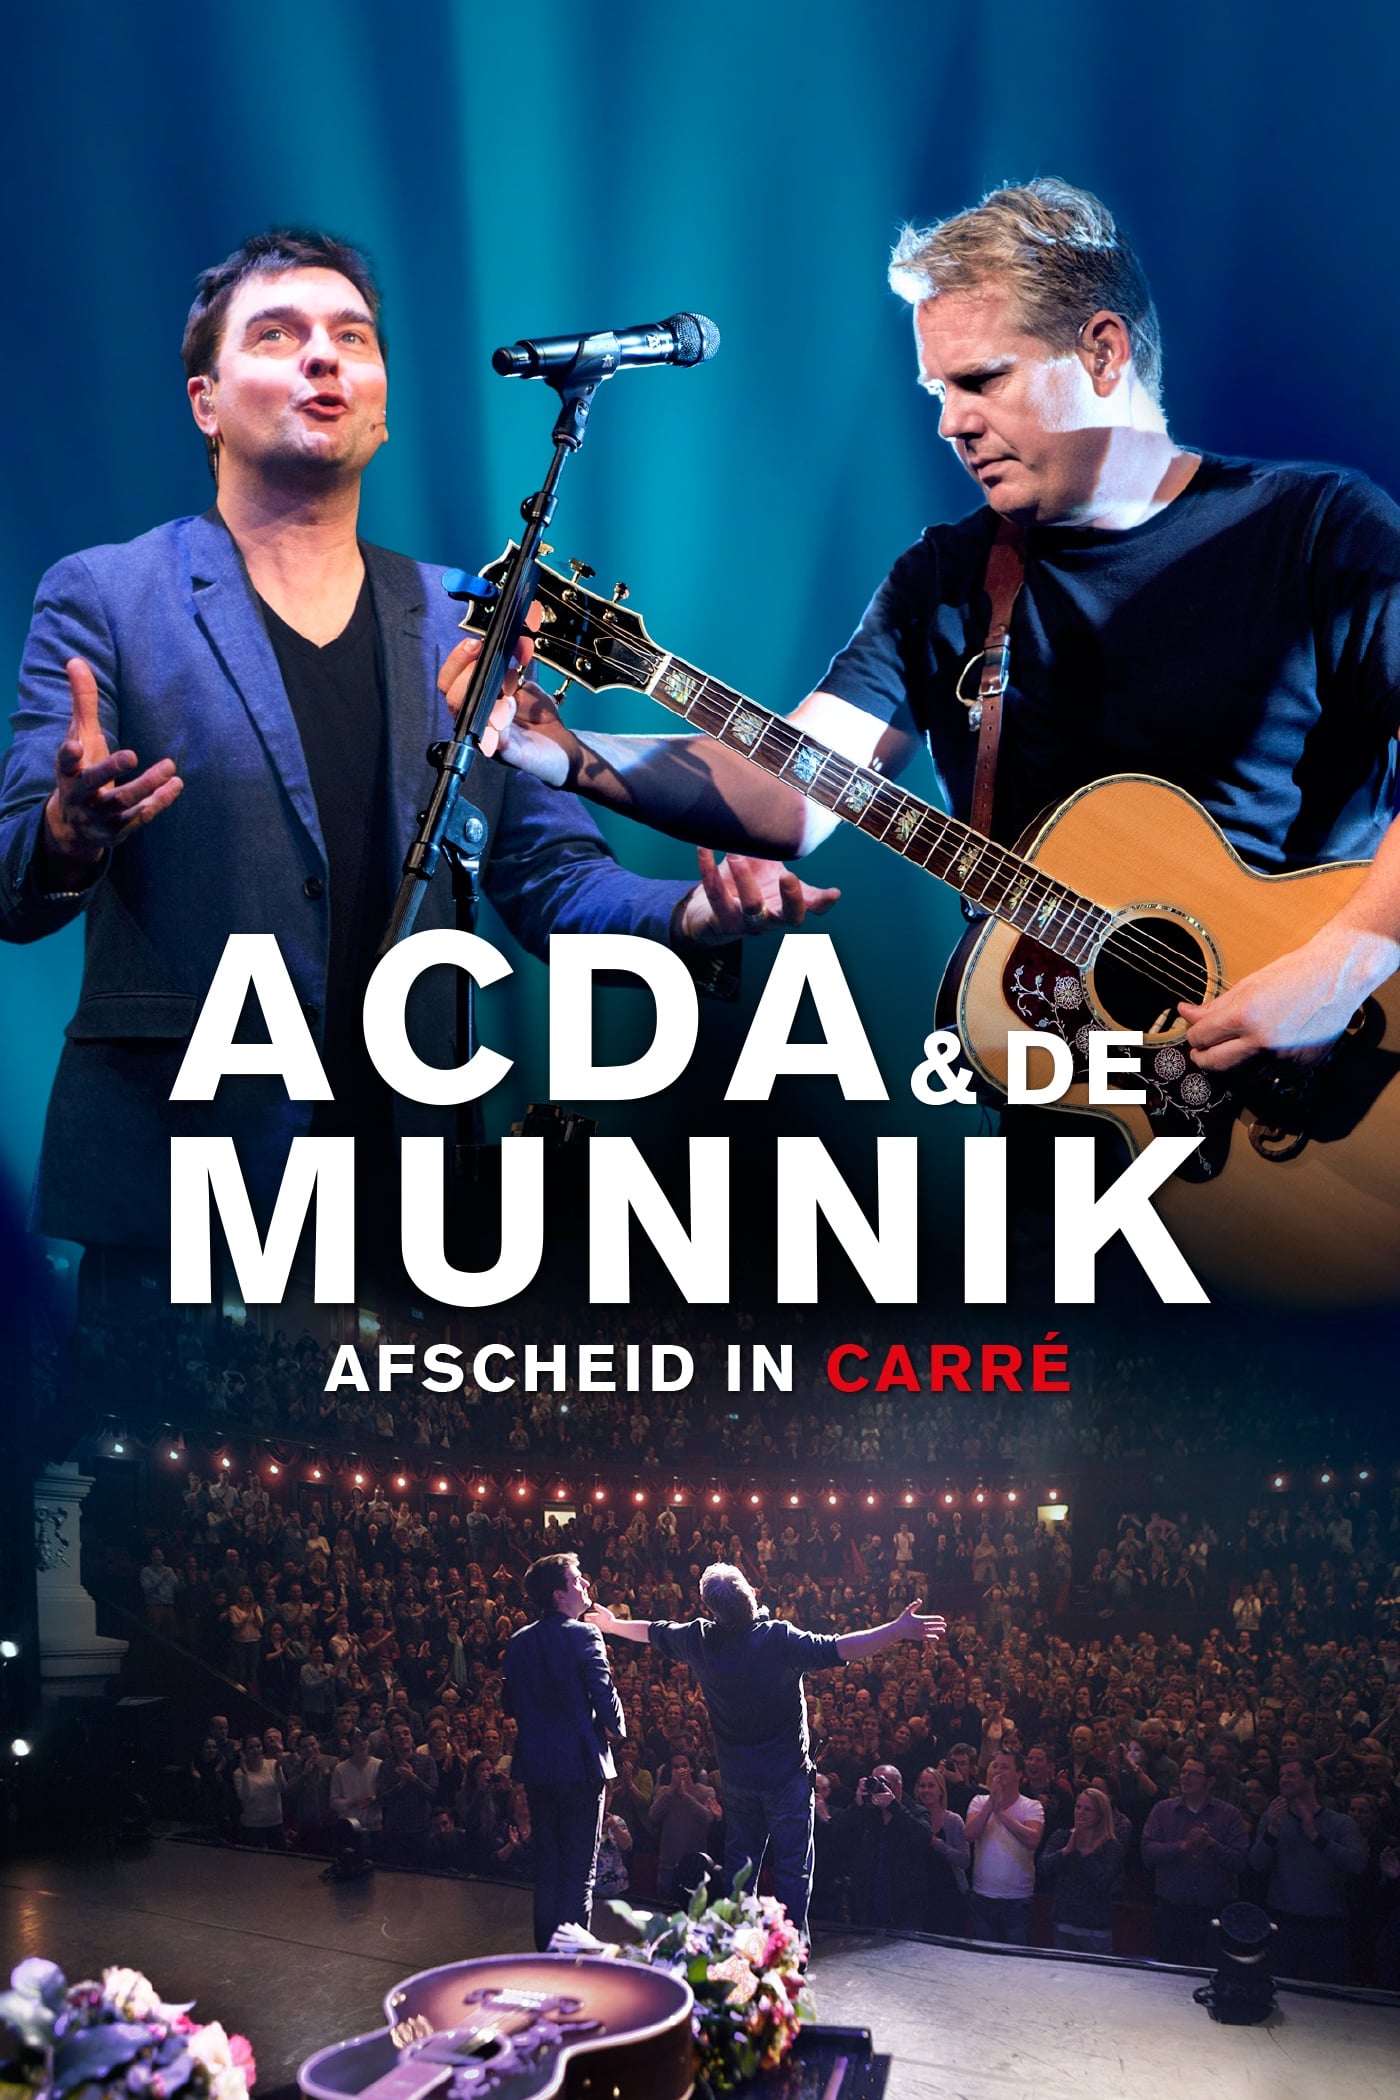 Acda & De Munnik: Afscheid in Carré